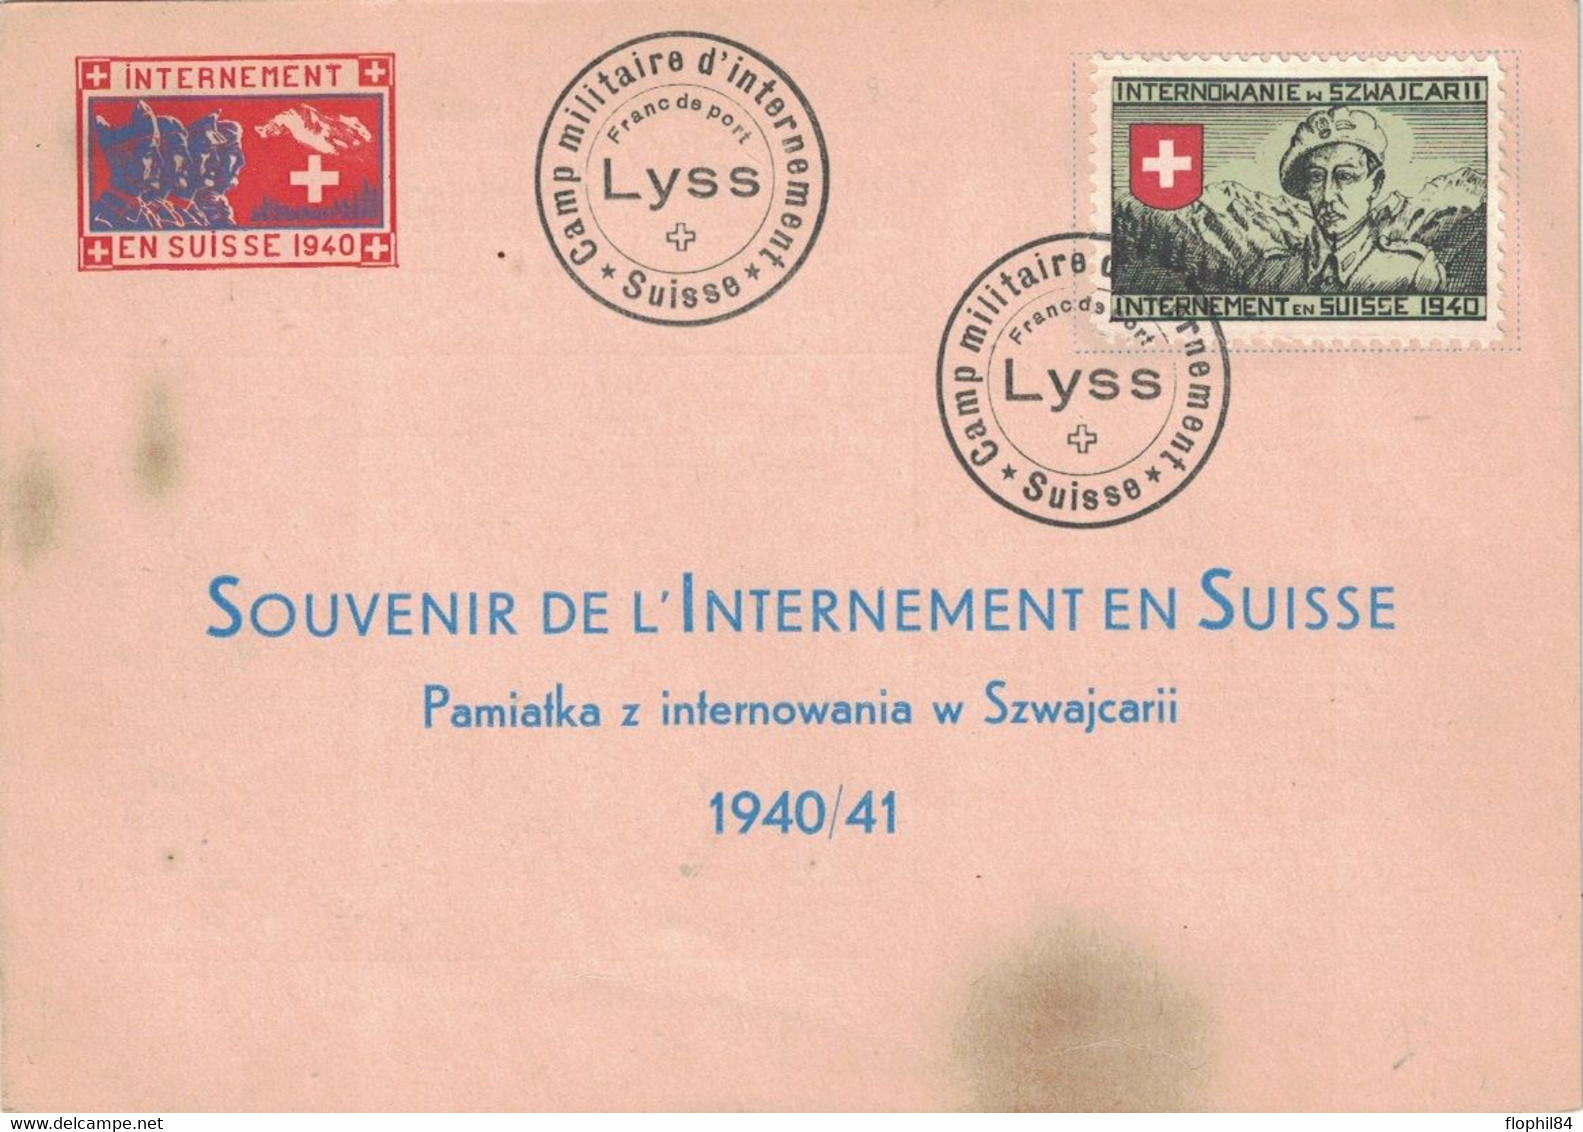 INTERNEMENT MILITAIRE EN SUISSE EN 1940 - ENVELOPPE AVEC VIGNETTE - CAMP DE LYSS. - Documenti